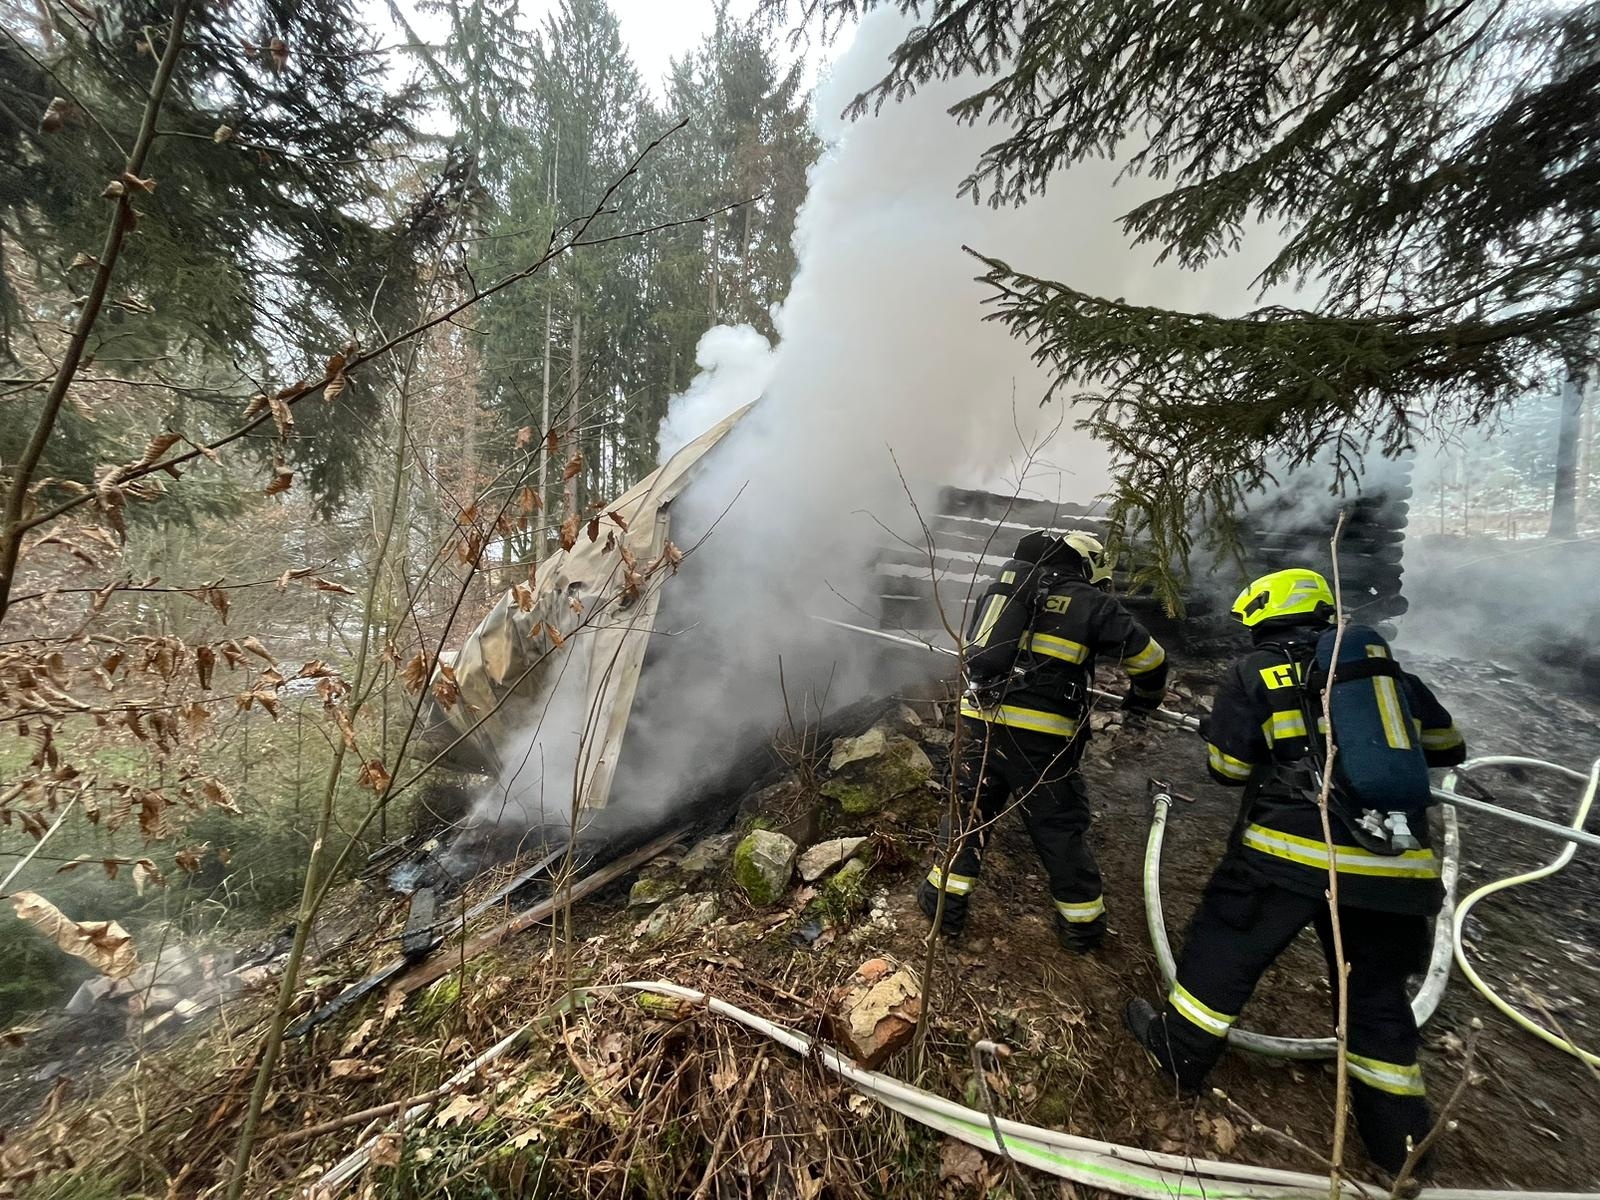 011-Požár roubené chaty v rekreační oblasti u obce Psáry nedaleko Prahy.jpg